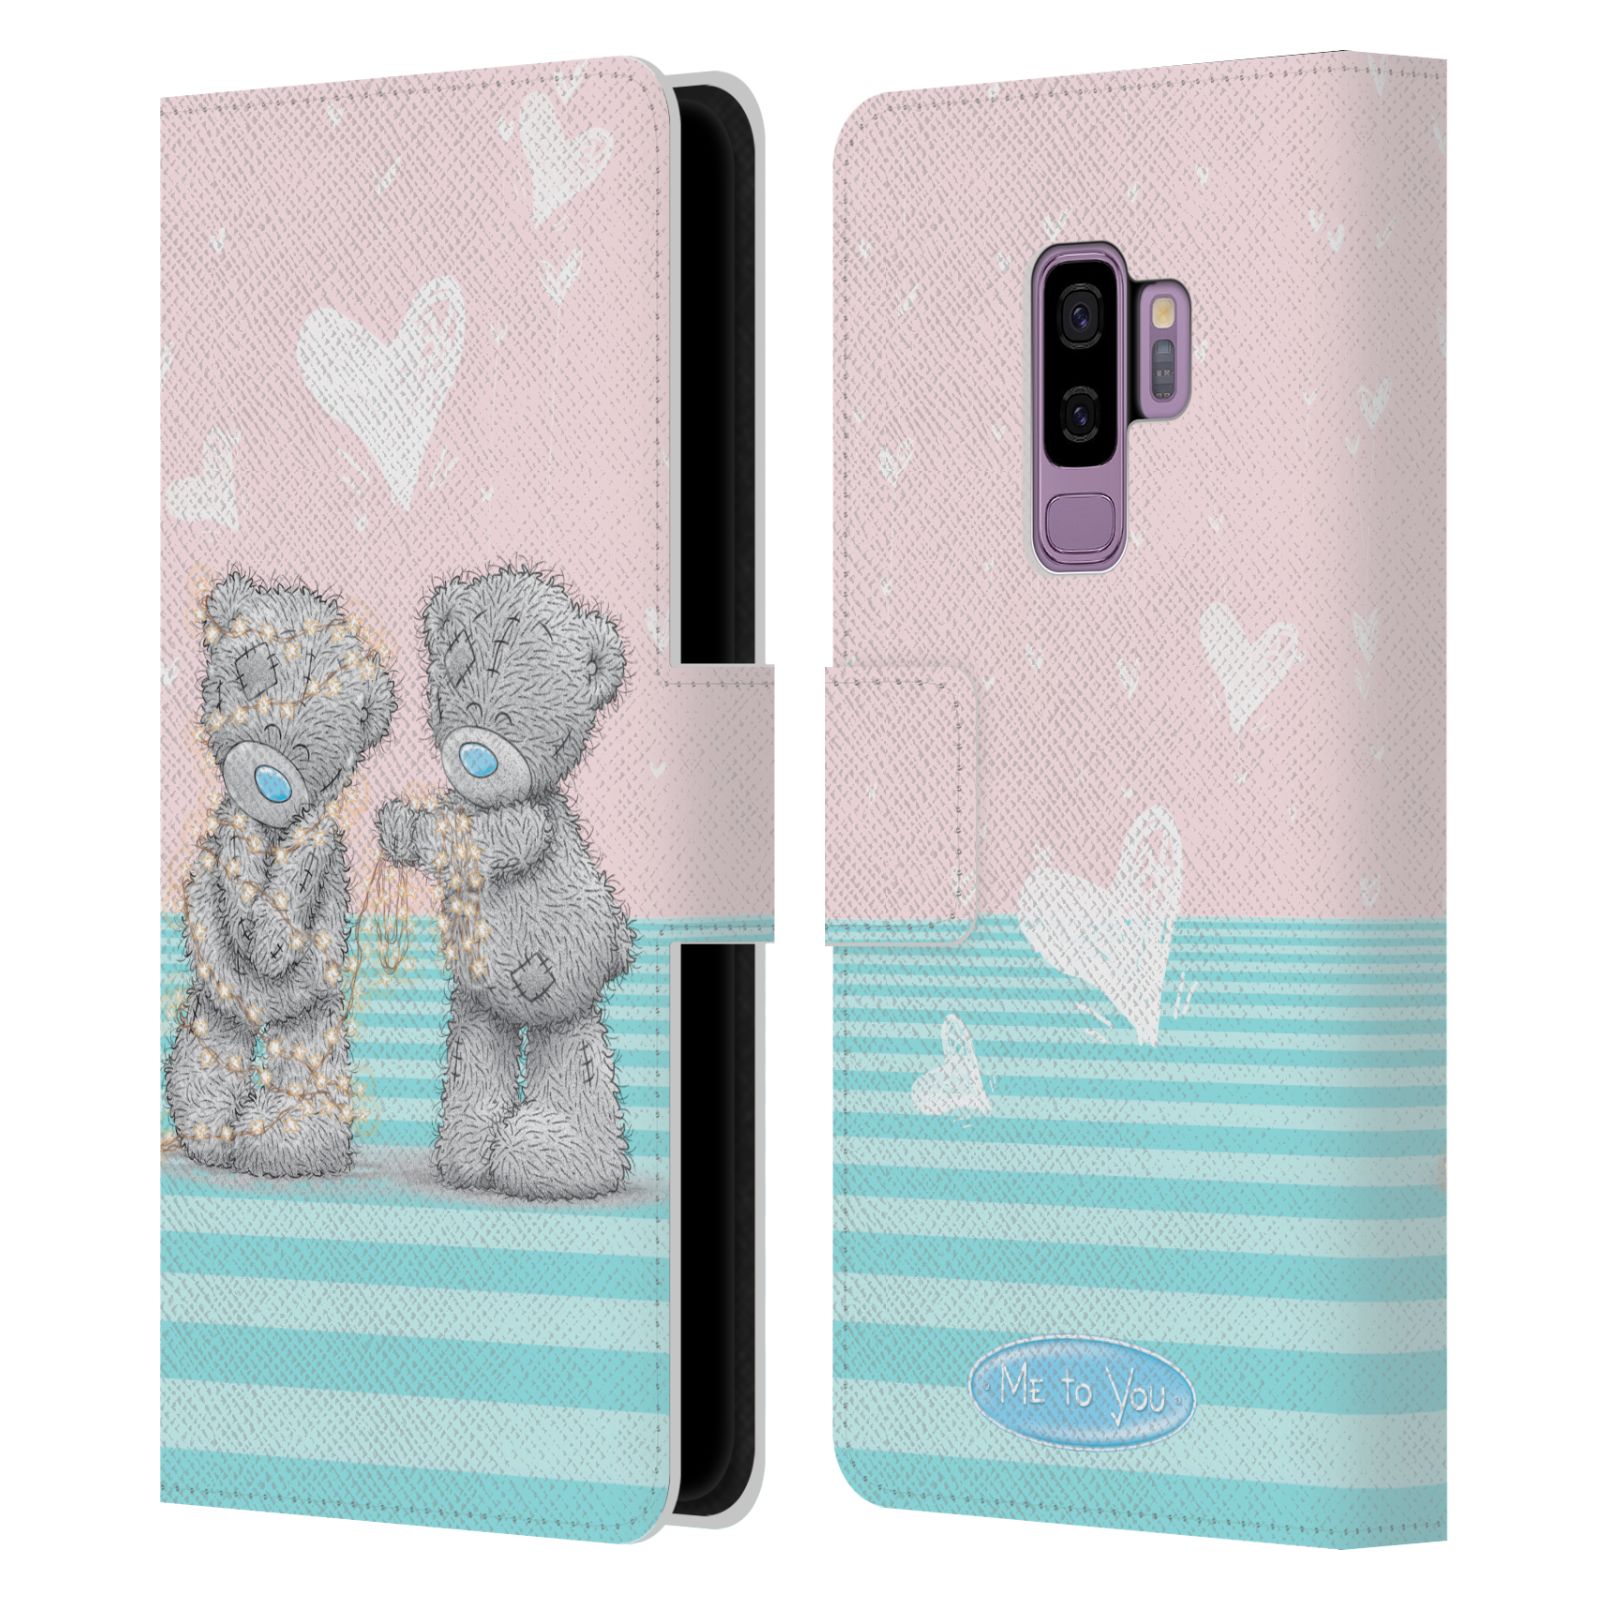 Pouzdro na mobil Samsung Galaxy S9+ / S9 PLUS - HEAD CASE - Me To You - Zamilovaní medvídci